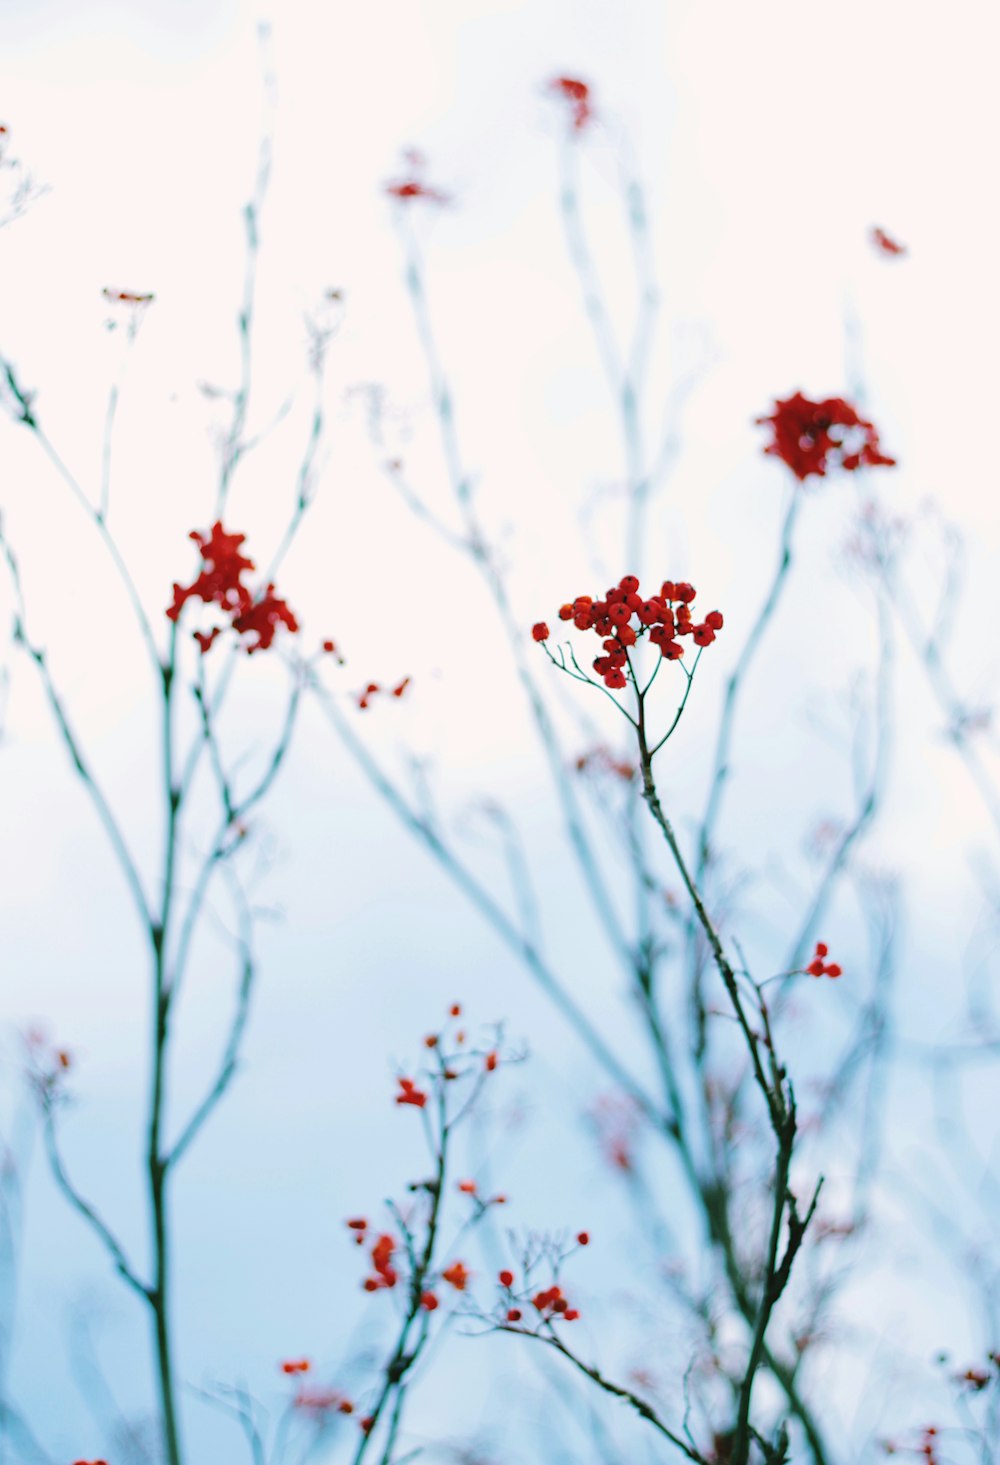 Photographie en gros plan de plante à fleurs rouges